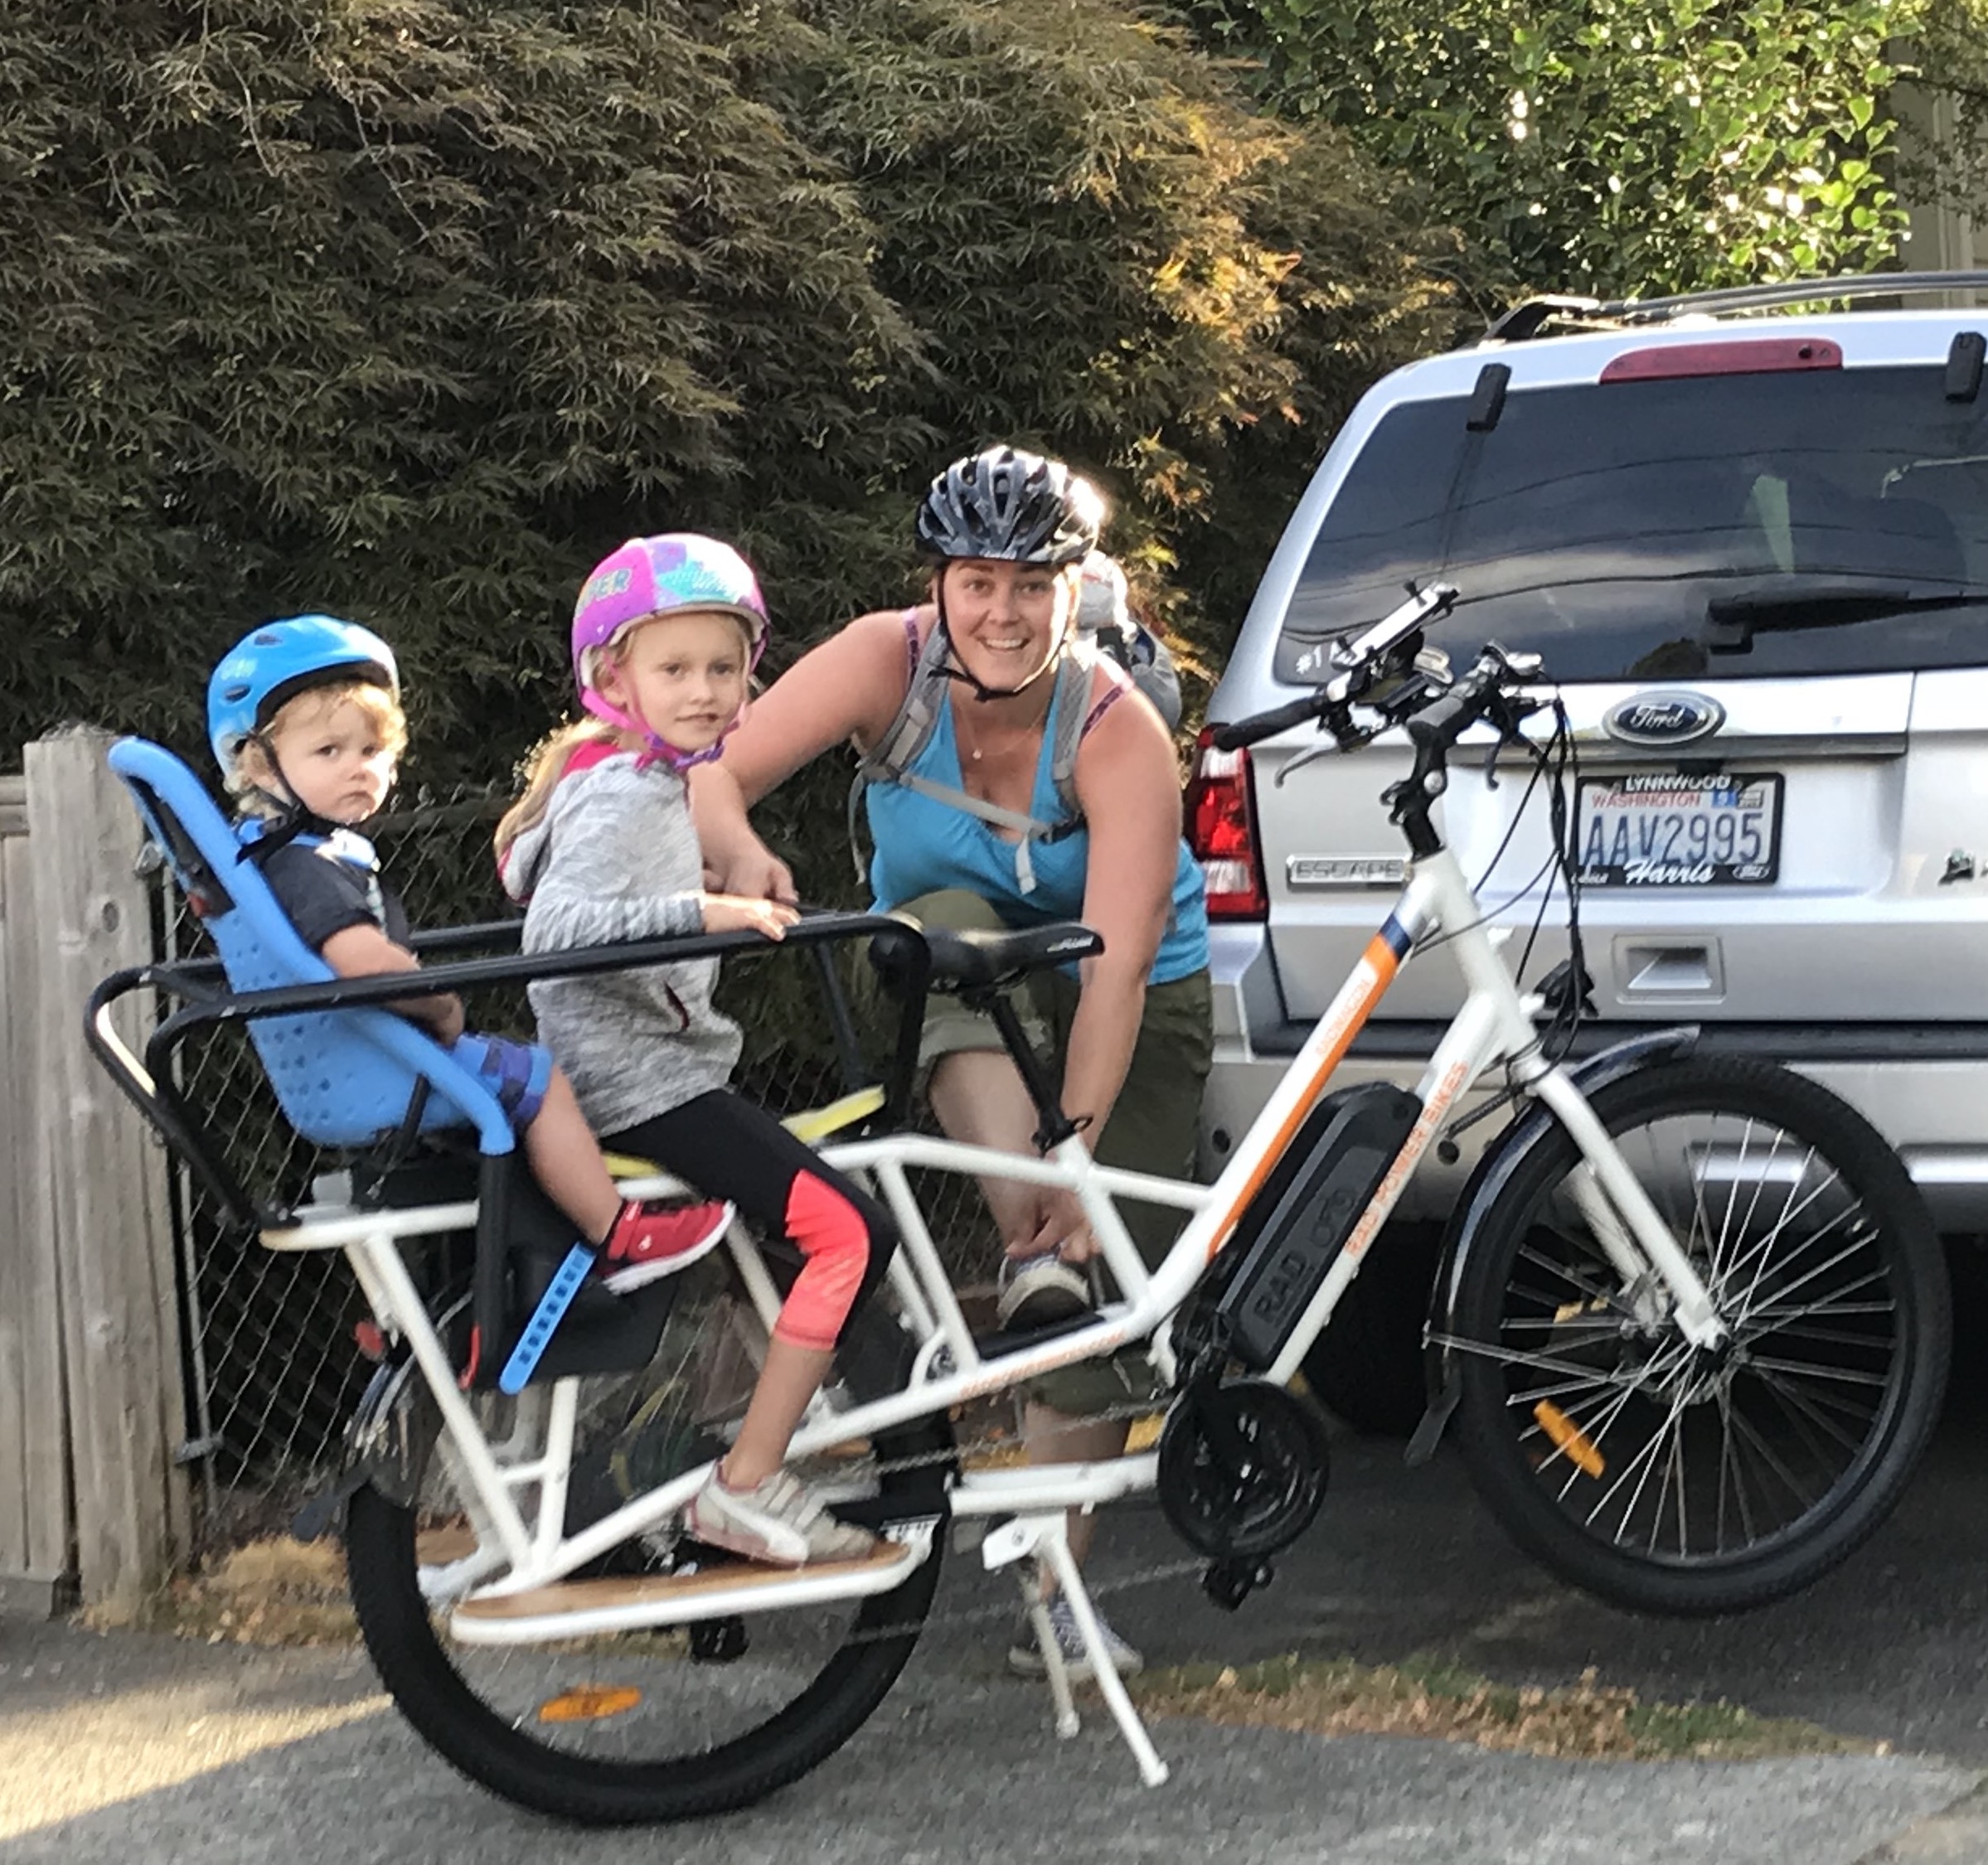 rad bike cargo